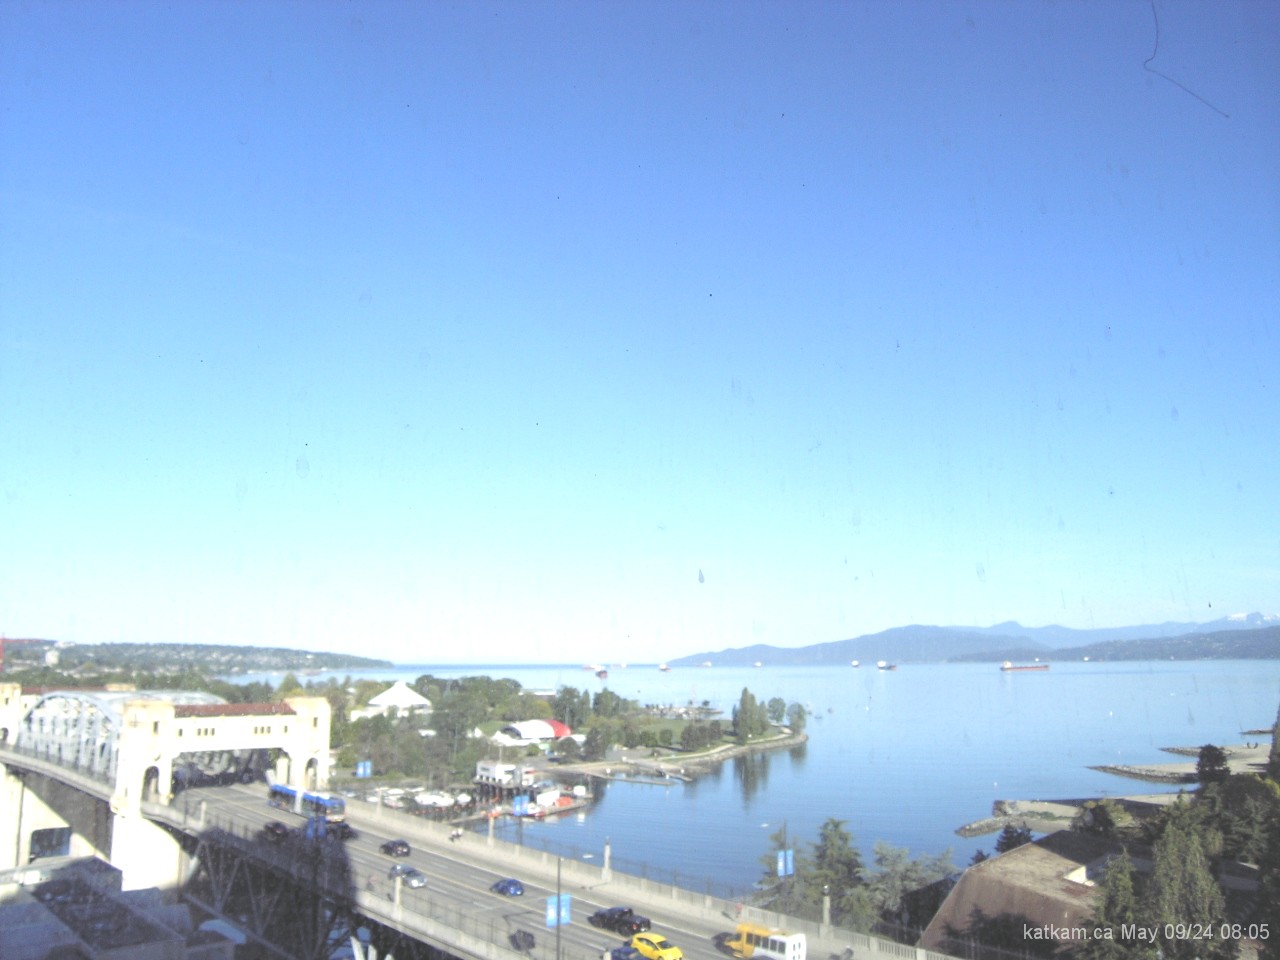 Vancouver, Canada - Webcam Image